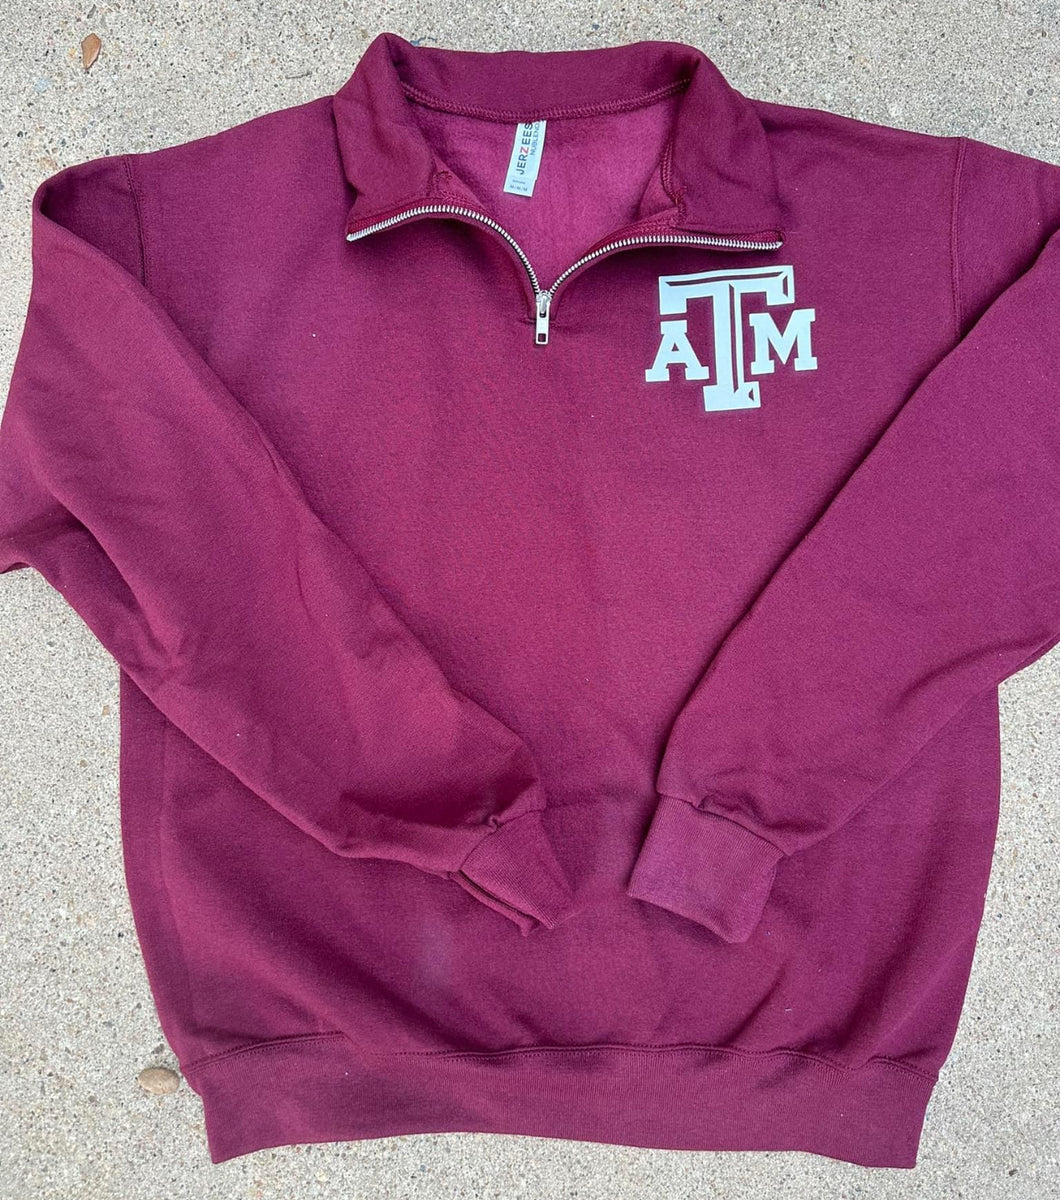 A&M 1/4 zip sweatshirt